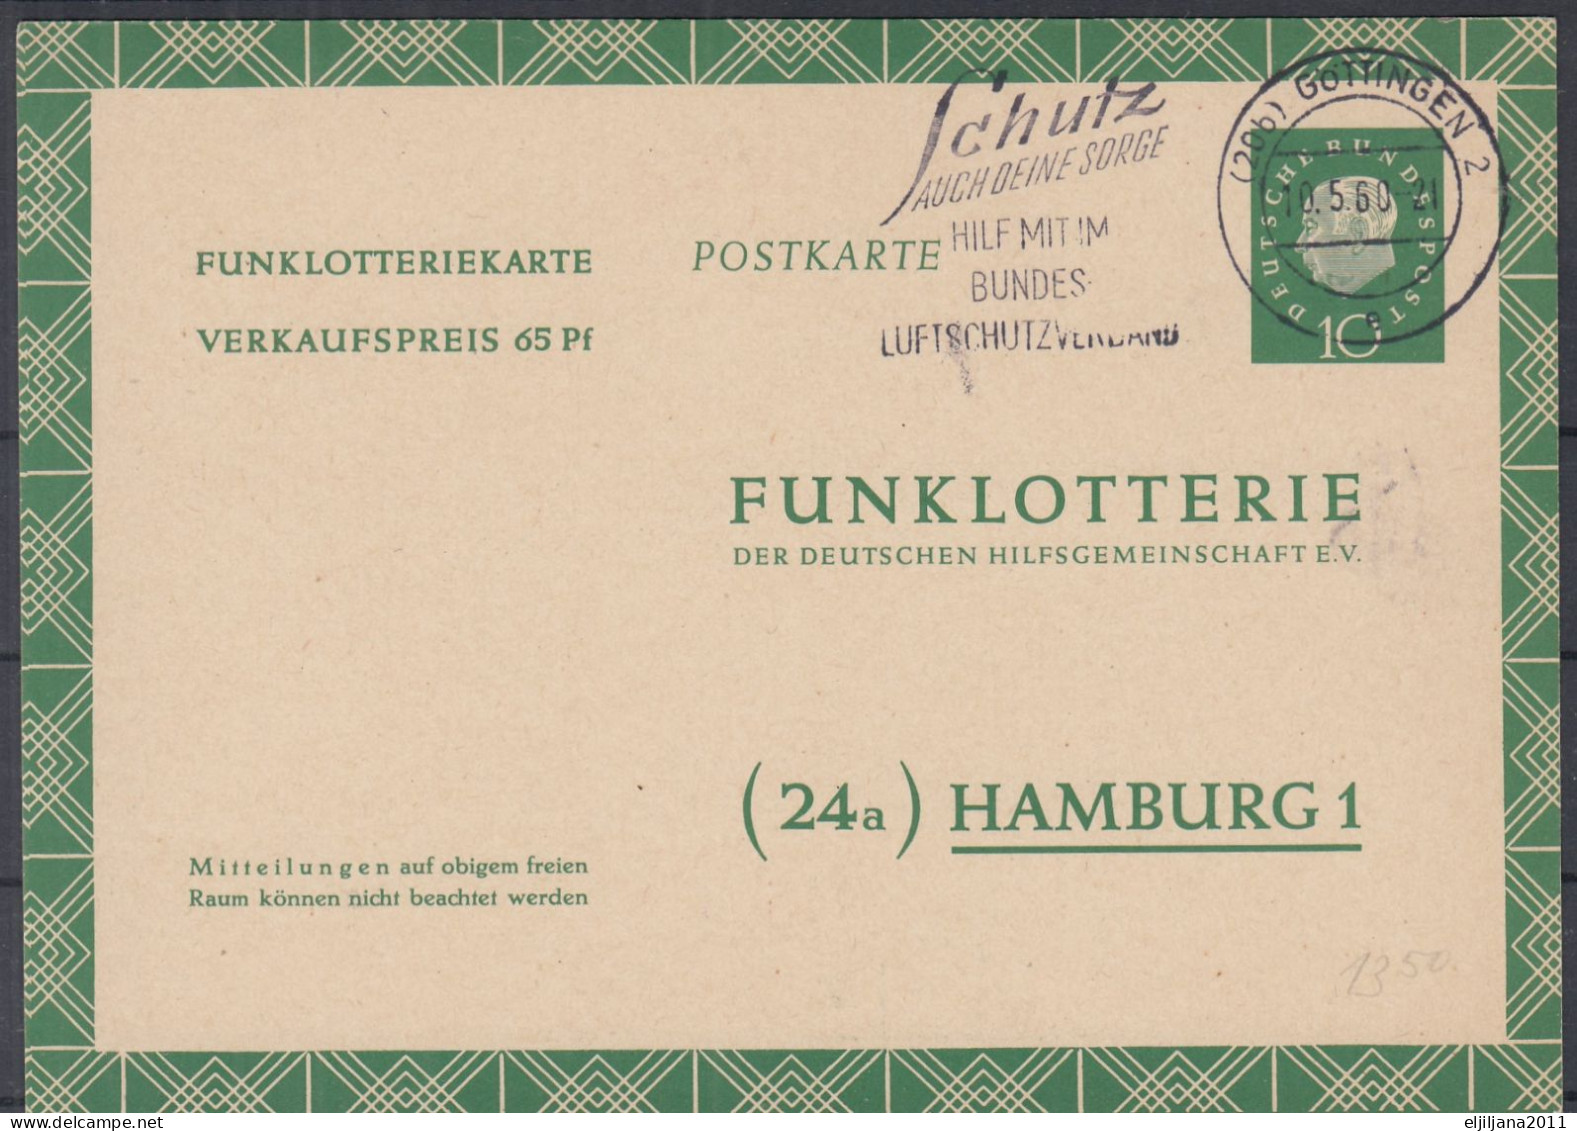 ⁕ Germany 1960 Deutsche BundesPost ⁕ FUNKLOTTERIE (24a) Hamburg 1 ⁕ Göttingen Postmark ⁕ Stationery Postcard - Postkarten - Gebraucht